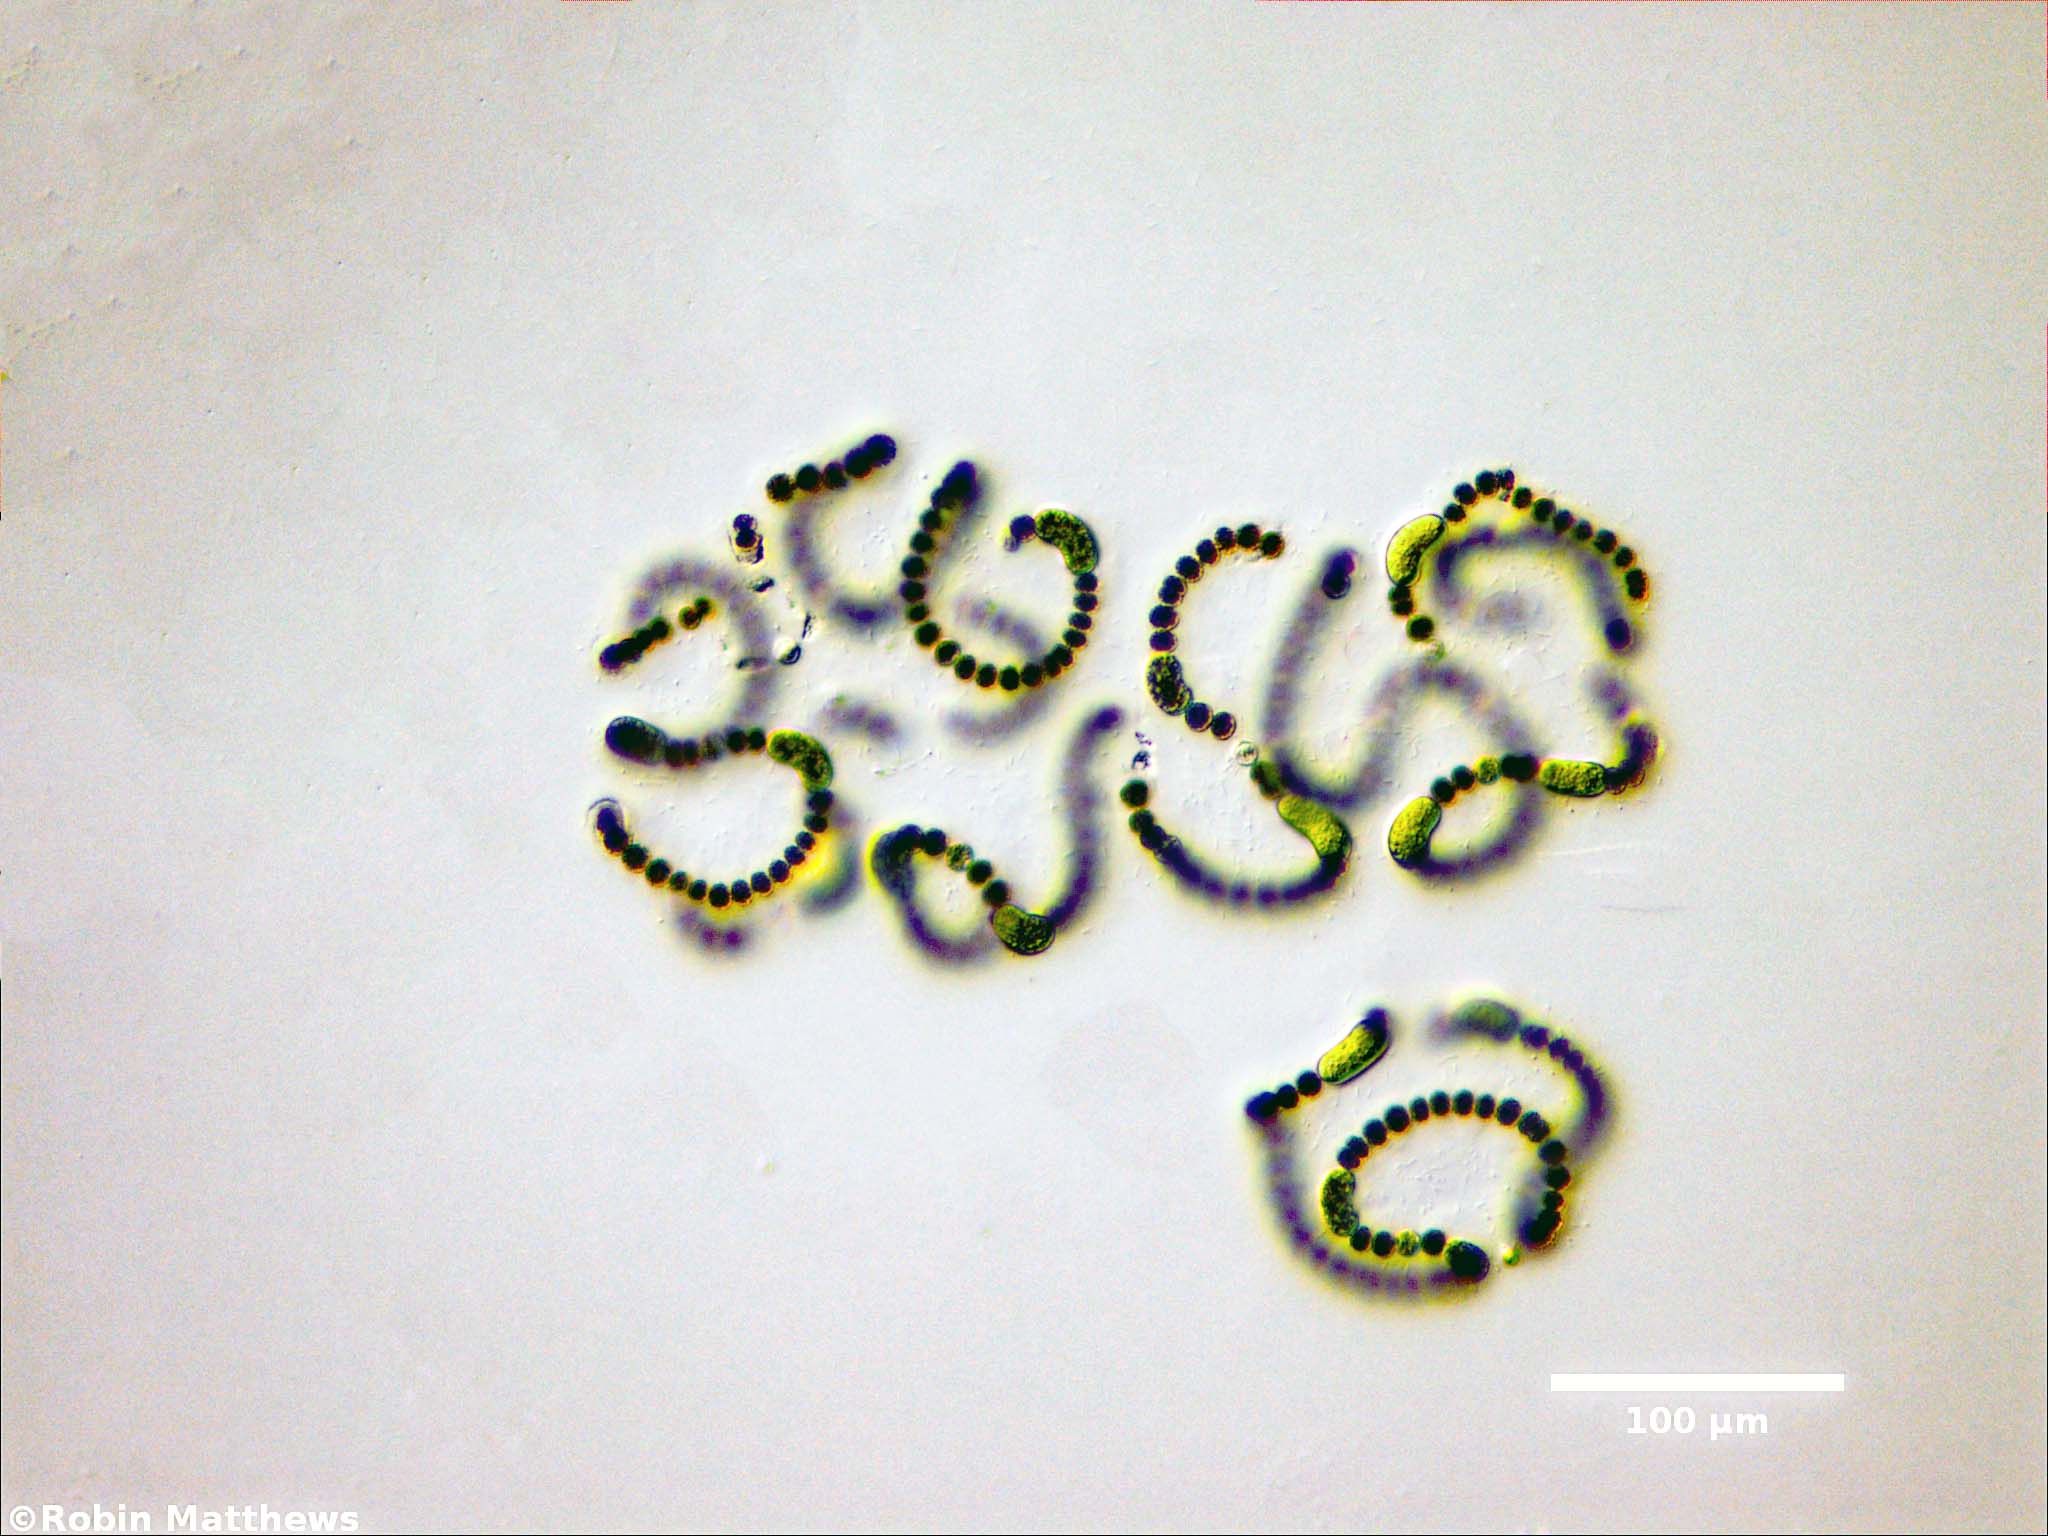 Cyanobacteria/Nostocales/Aphanizomenonaceae/Dolichospermum/flos-aquae/dolichospermum-567.jpg